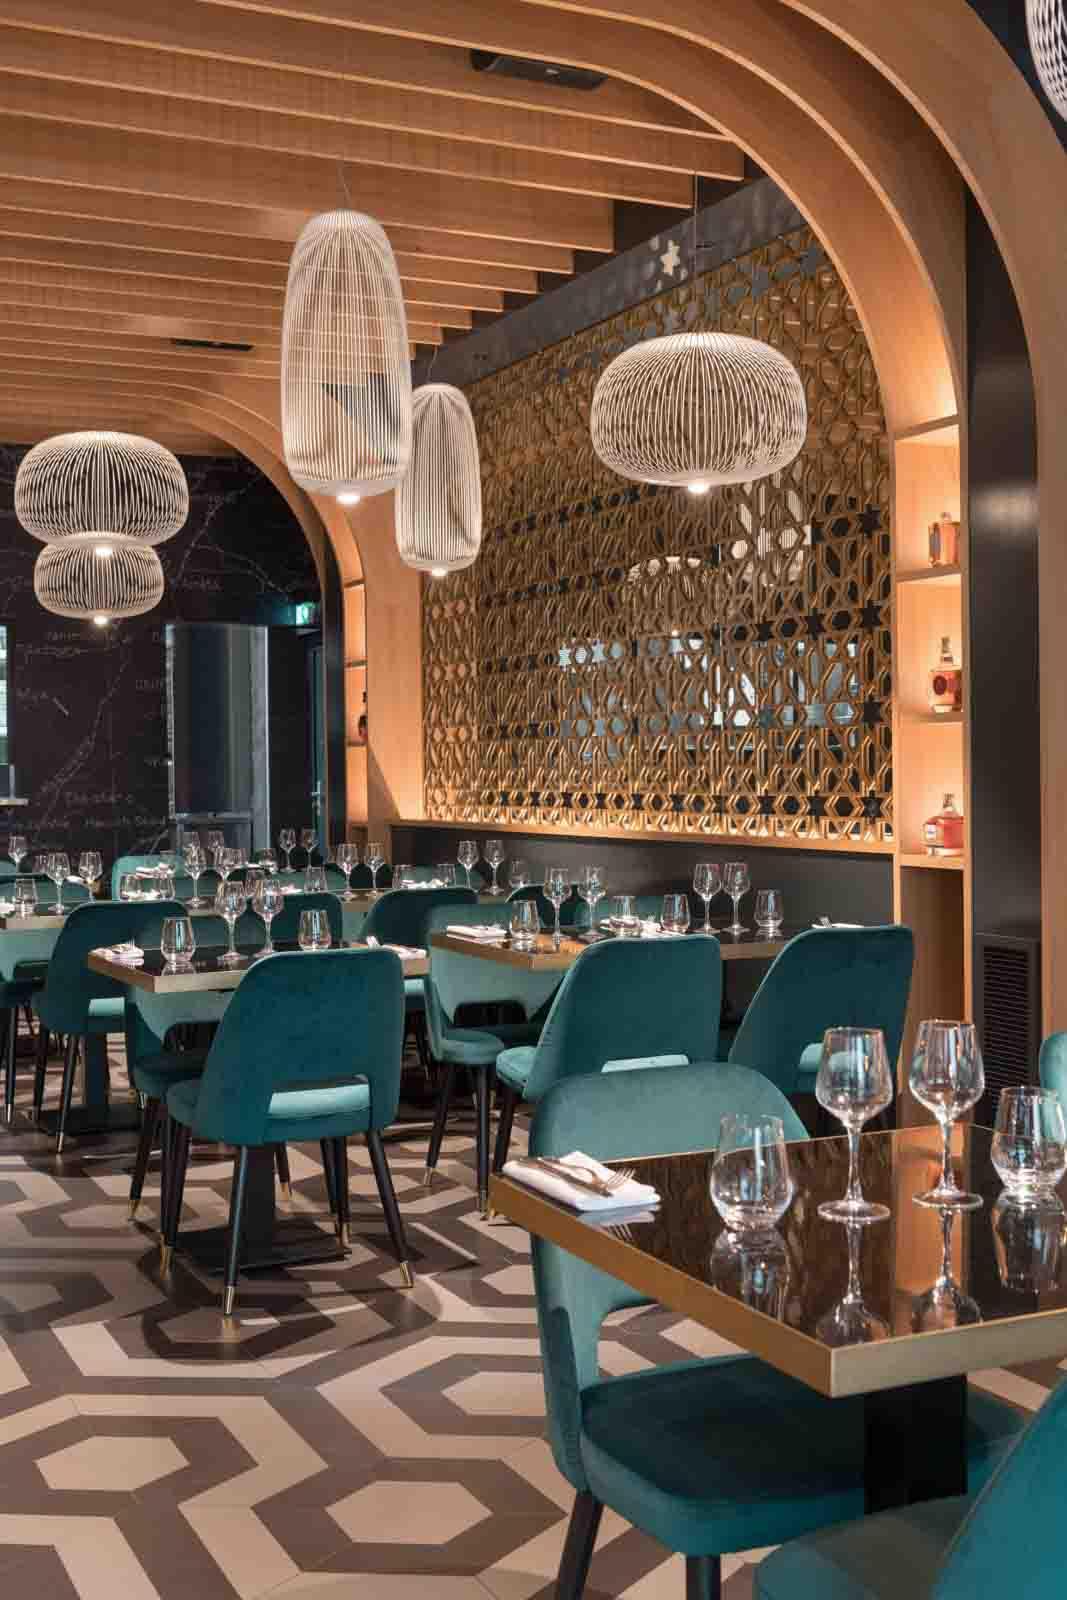 Aménagement du restaurant Mon Liban, un lieu unique inspiré de l'art de vivre libanais. La conception de tables sur-mesure au design ultra élégant et épuré dans un décor somptueux.